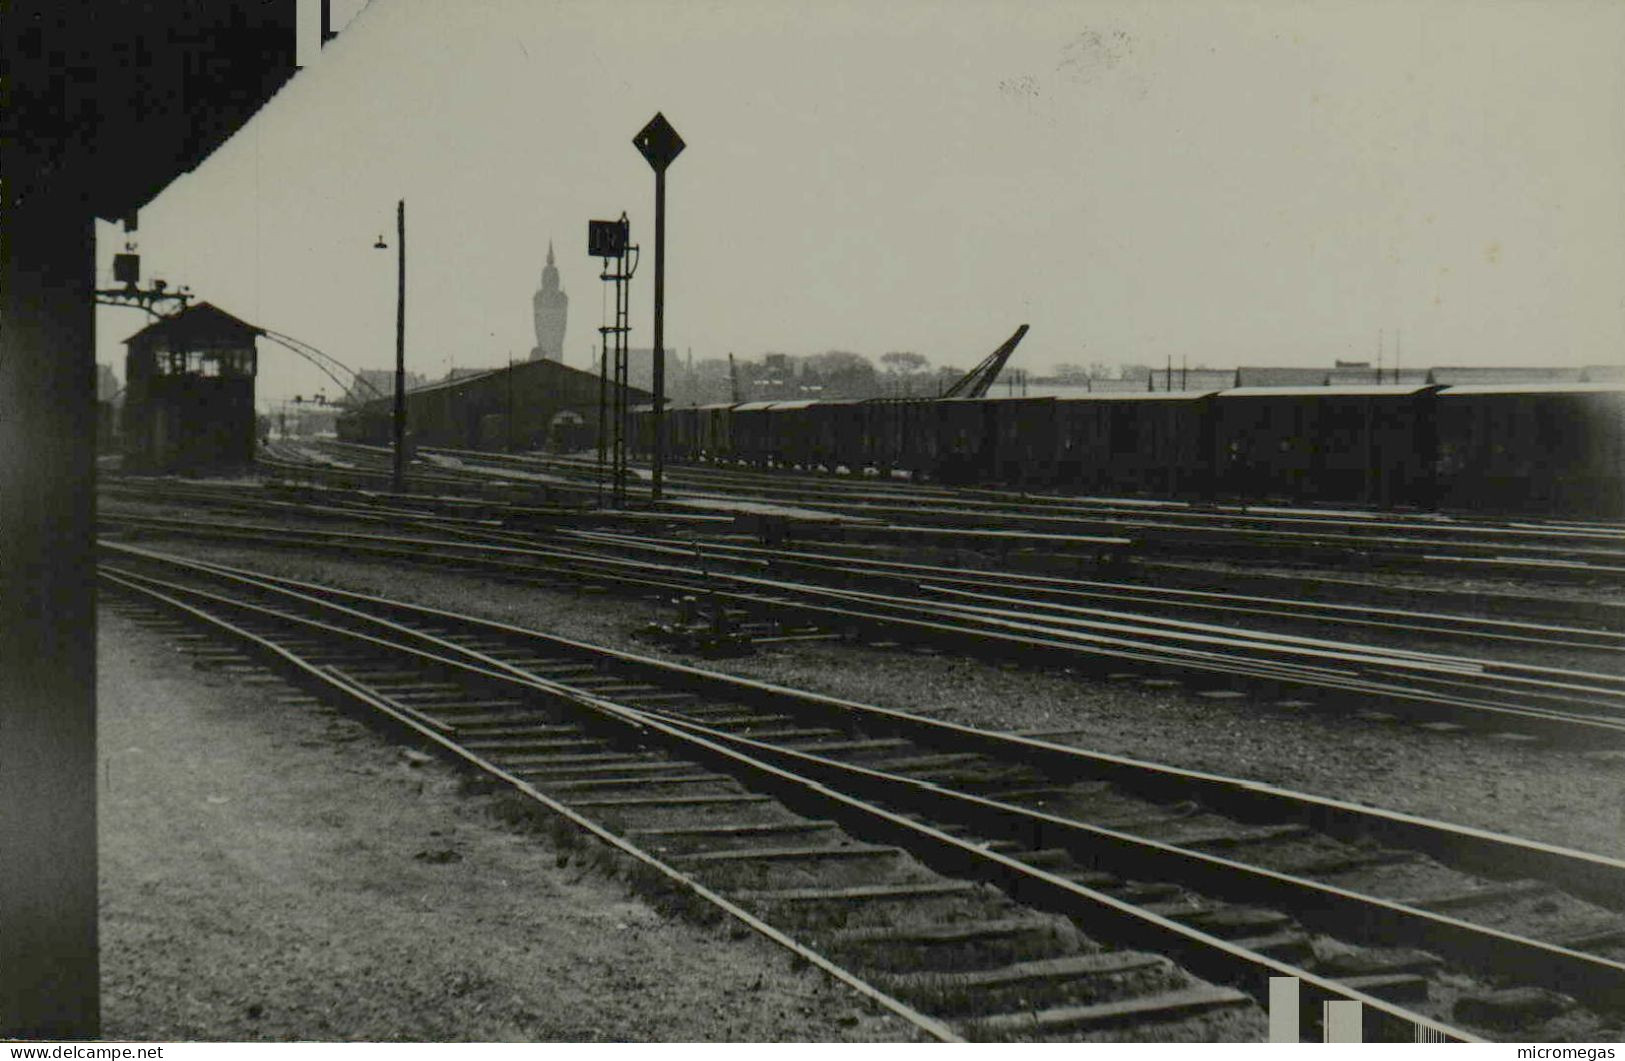 Dépôt De Calais - Sortie Du Dépôt Vers La Gare  - Cliché Alf. M. Eychenne, 1951 - Trenes